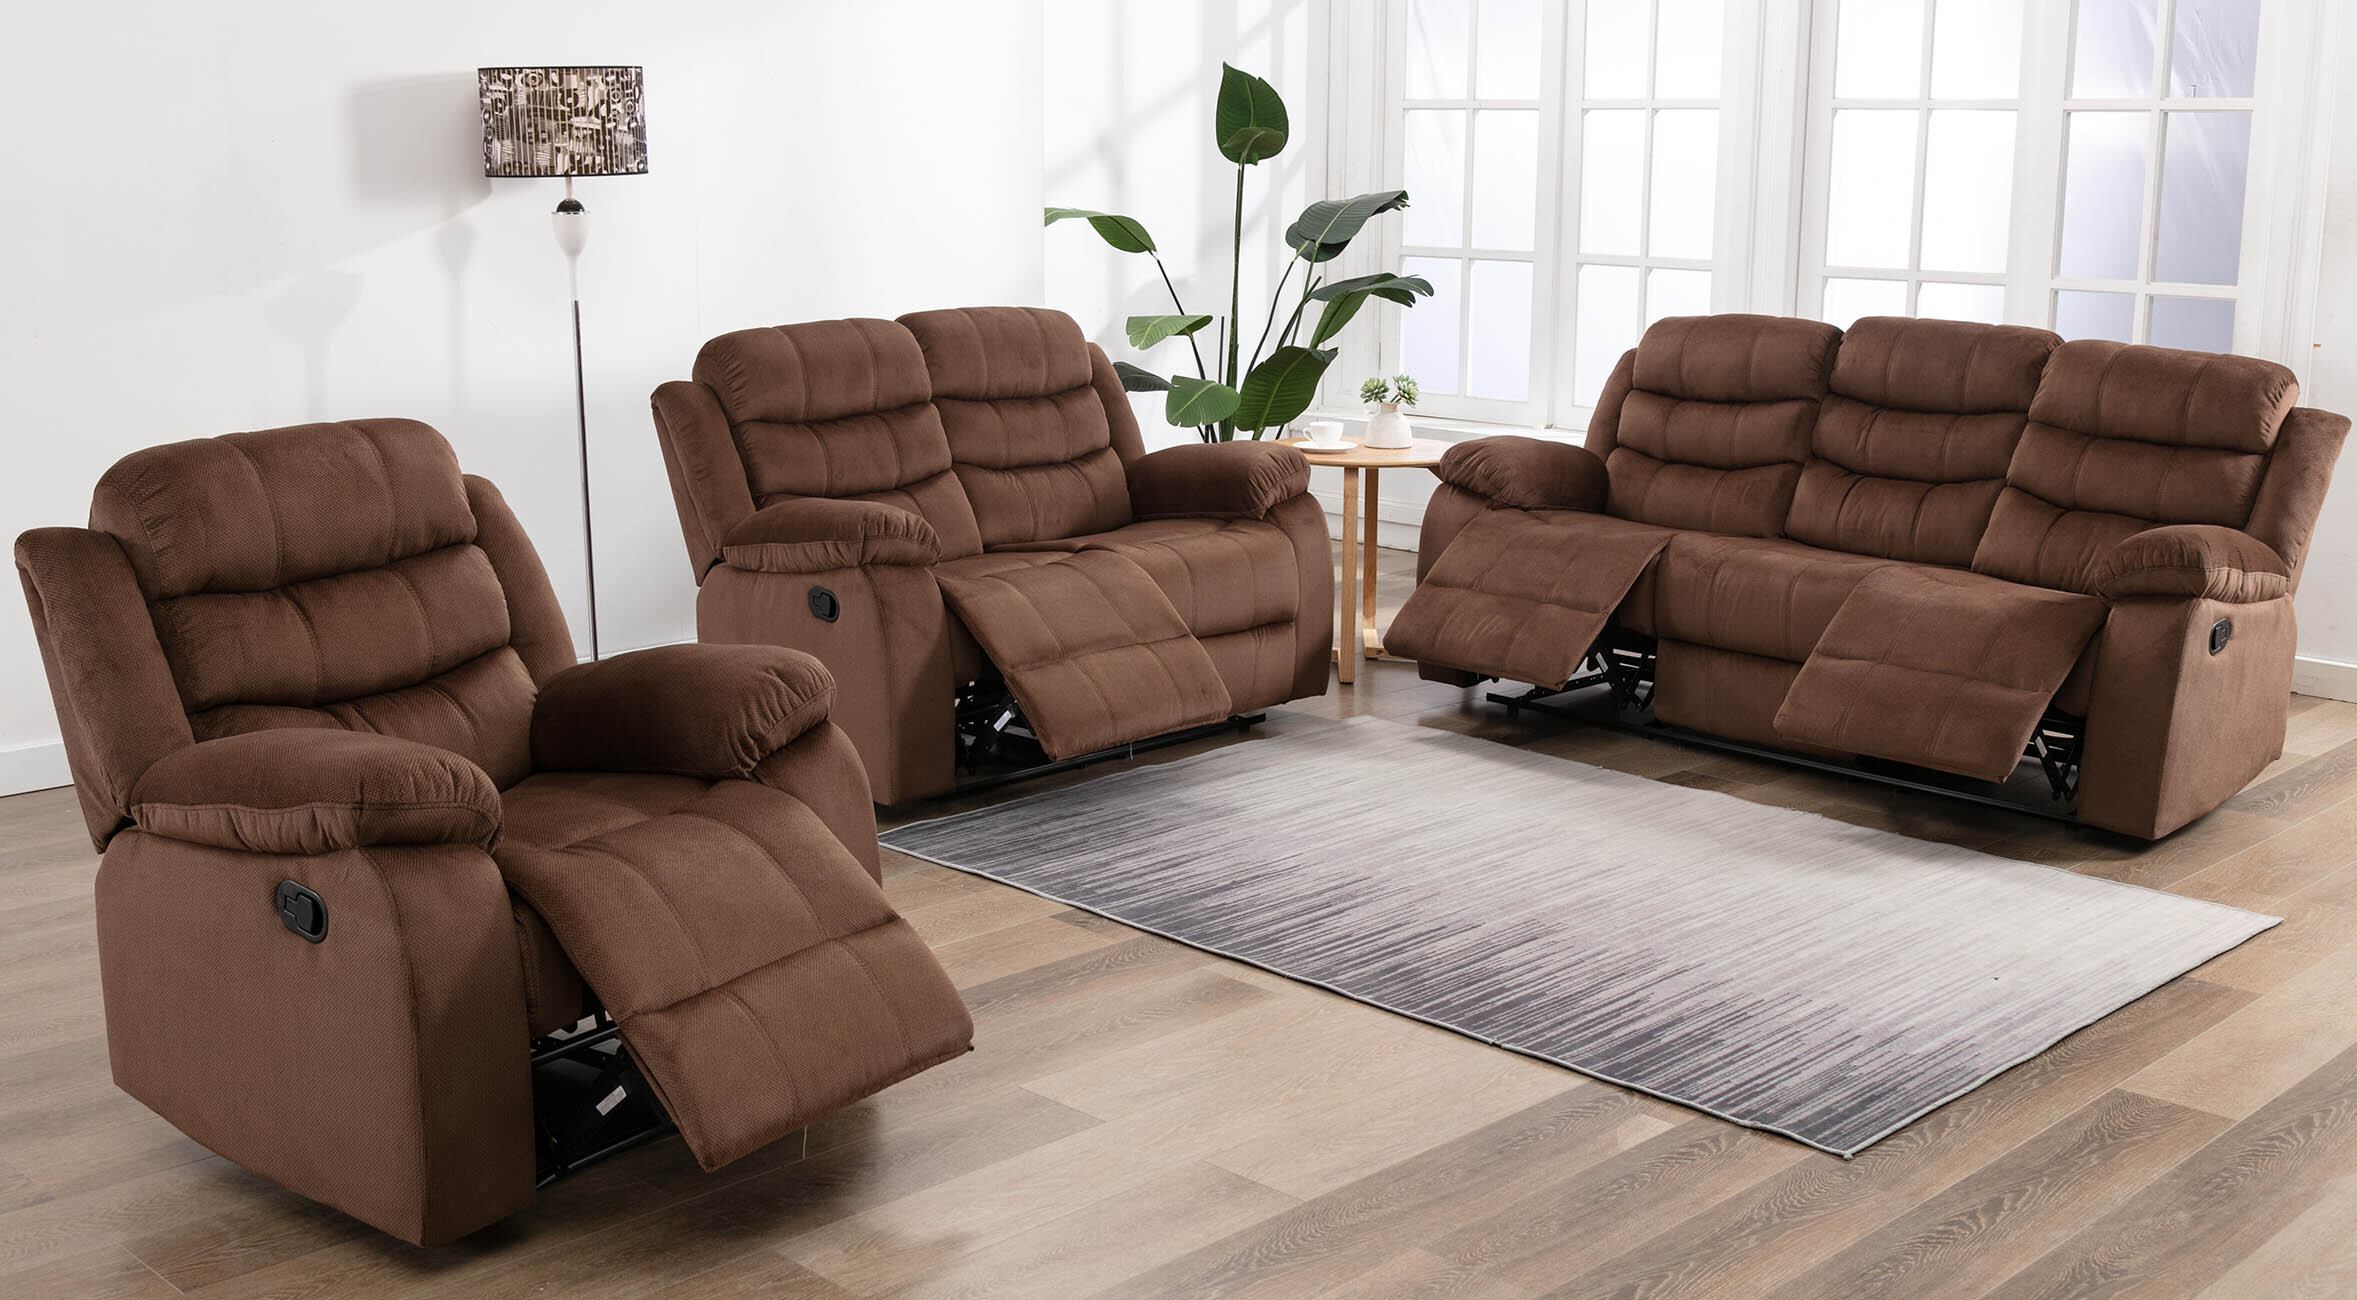 microsuede living room furniture